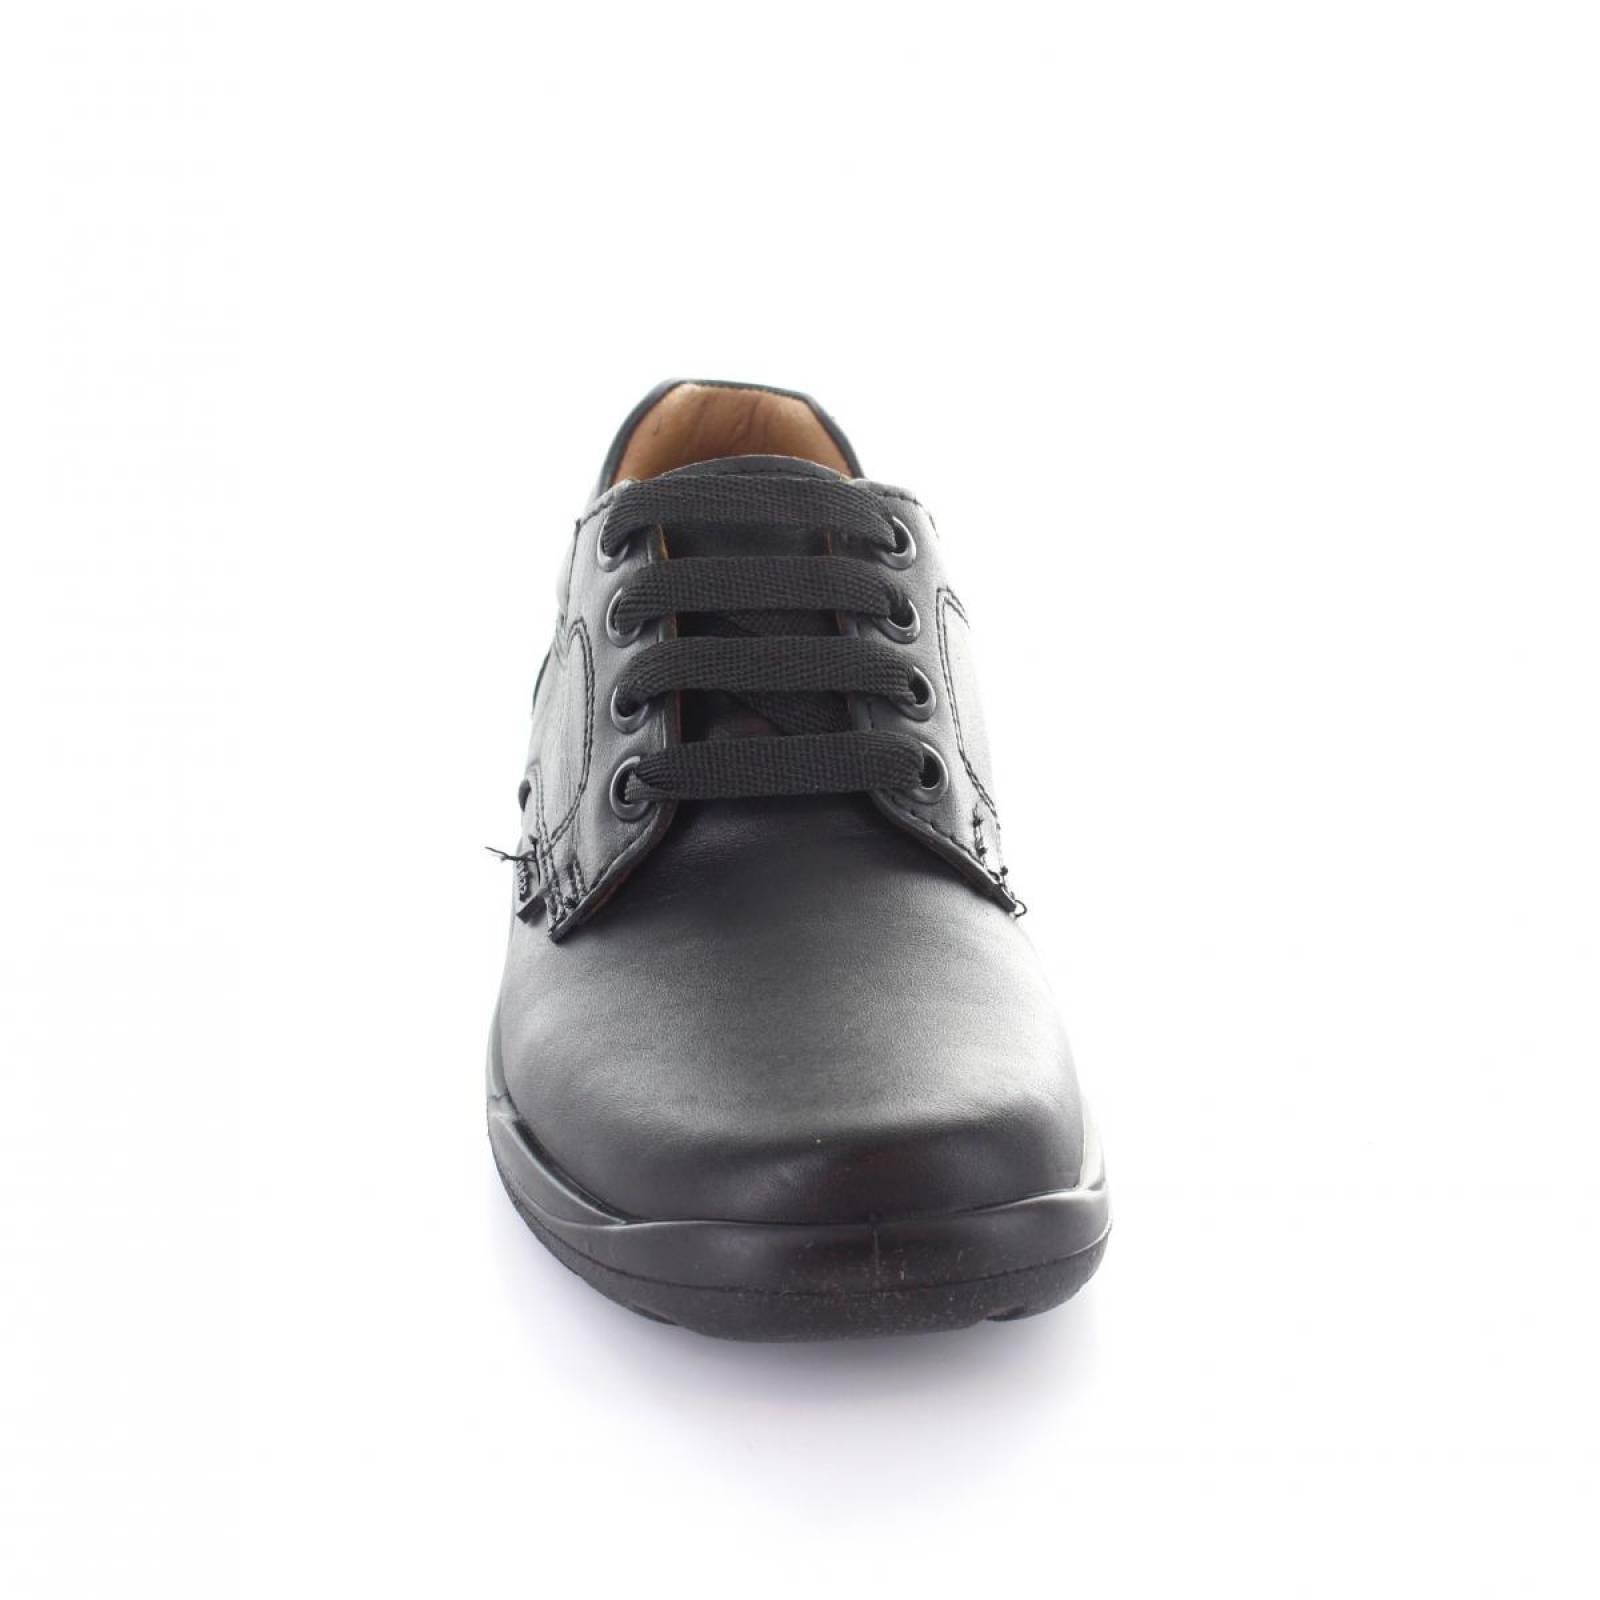 Zapato para Ni o Audaz 163901 A 041330 Color Negro